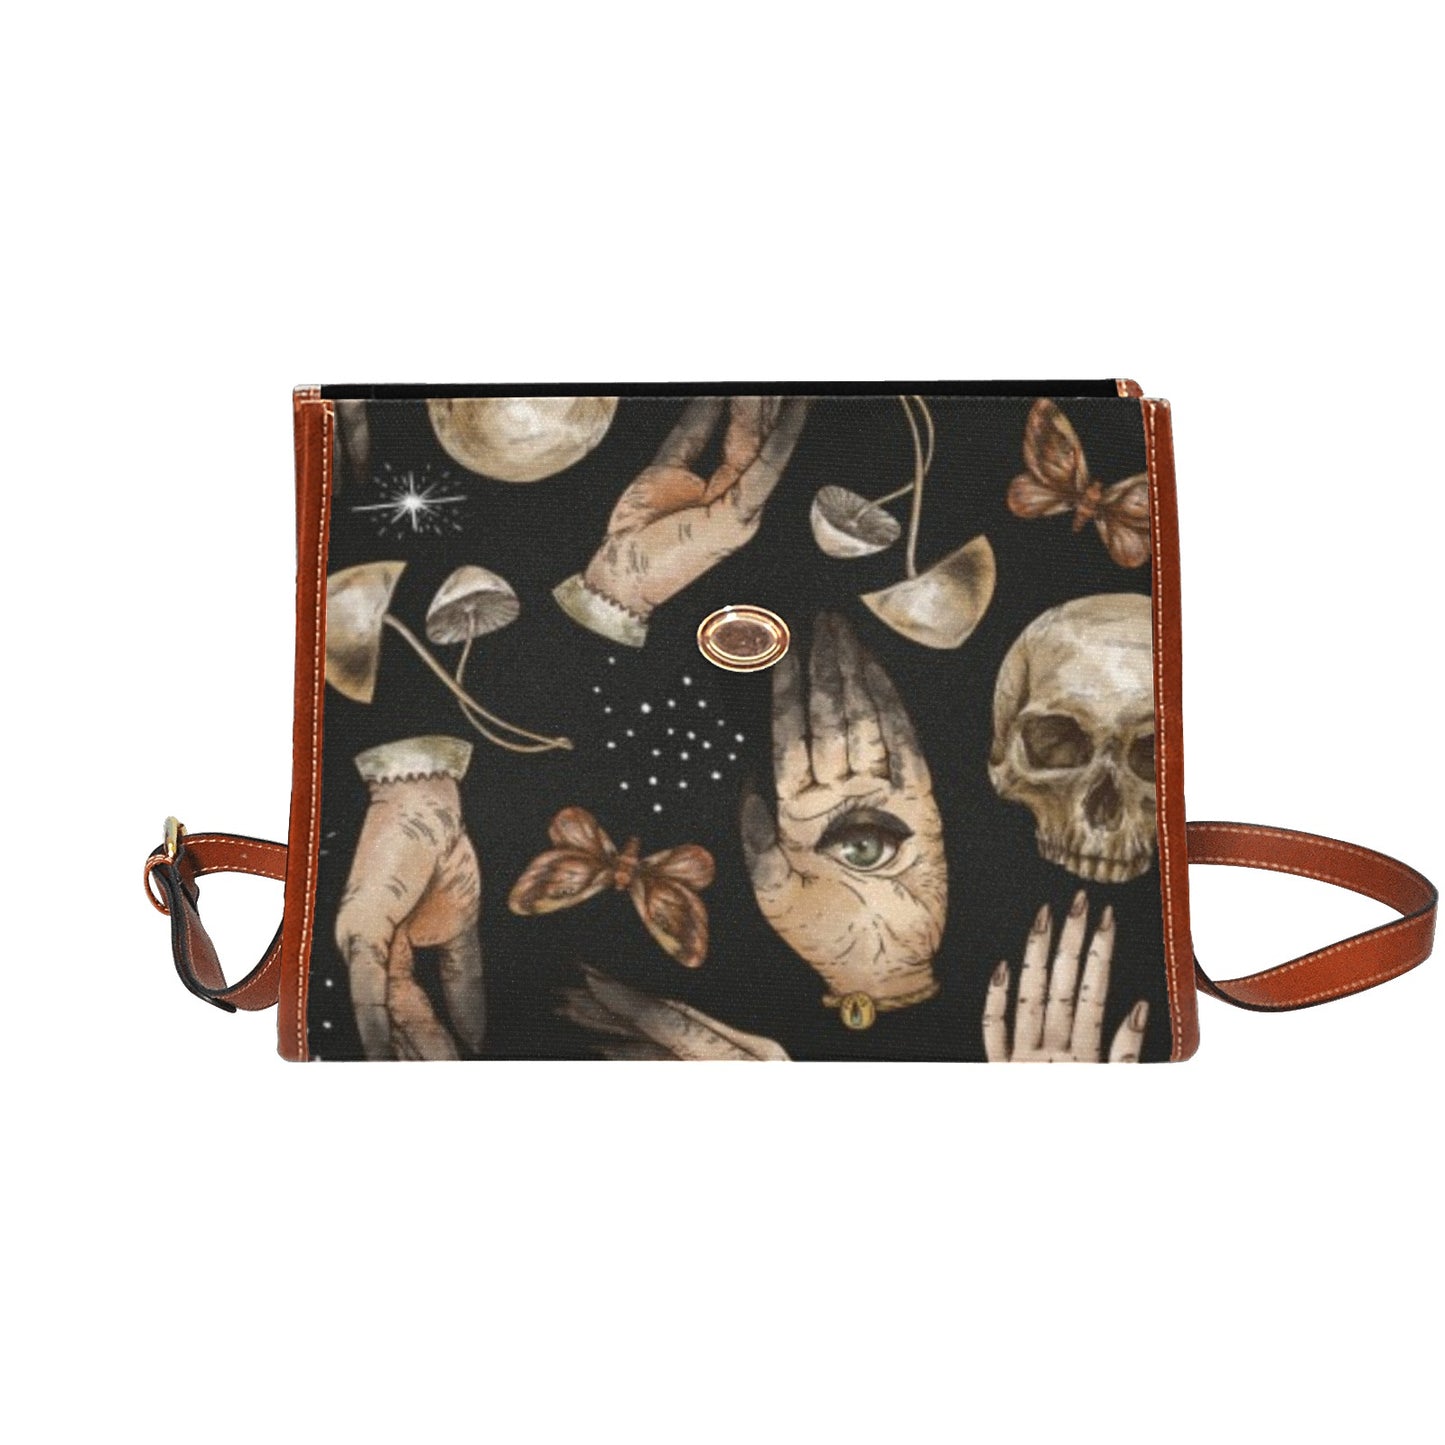 Skull Hands mushroom witchcraft satchel bag